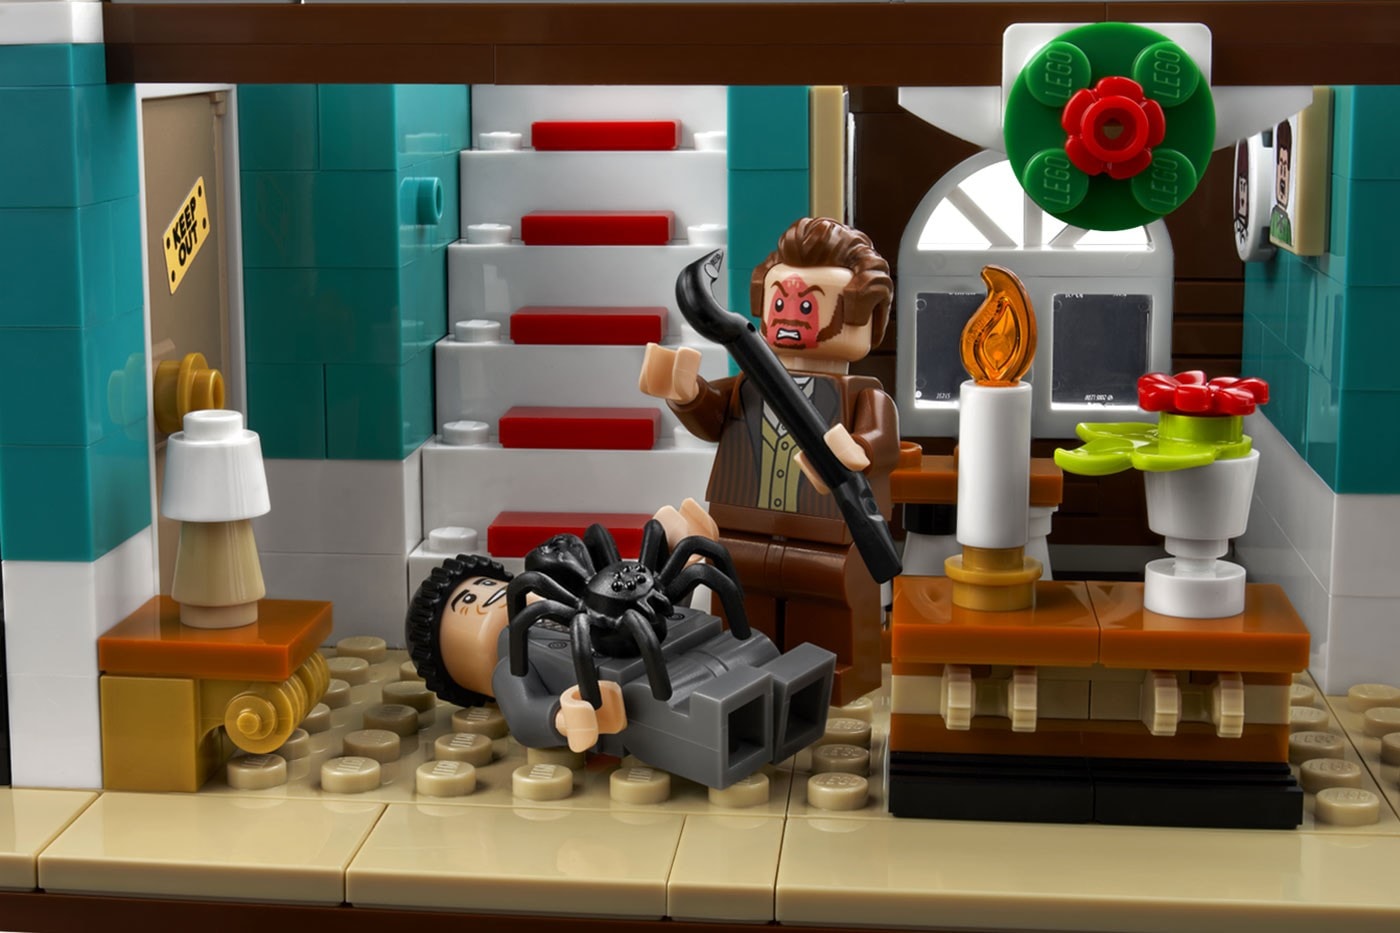 LEGO® Ideas 推出最新《小鬼當家 Home Alone》積木模型套組